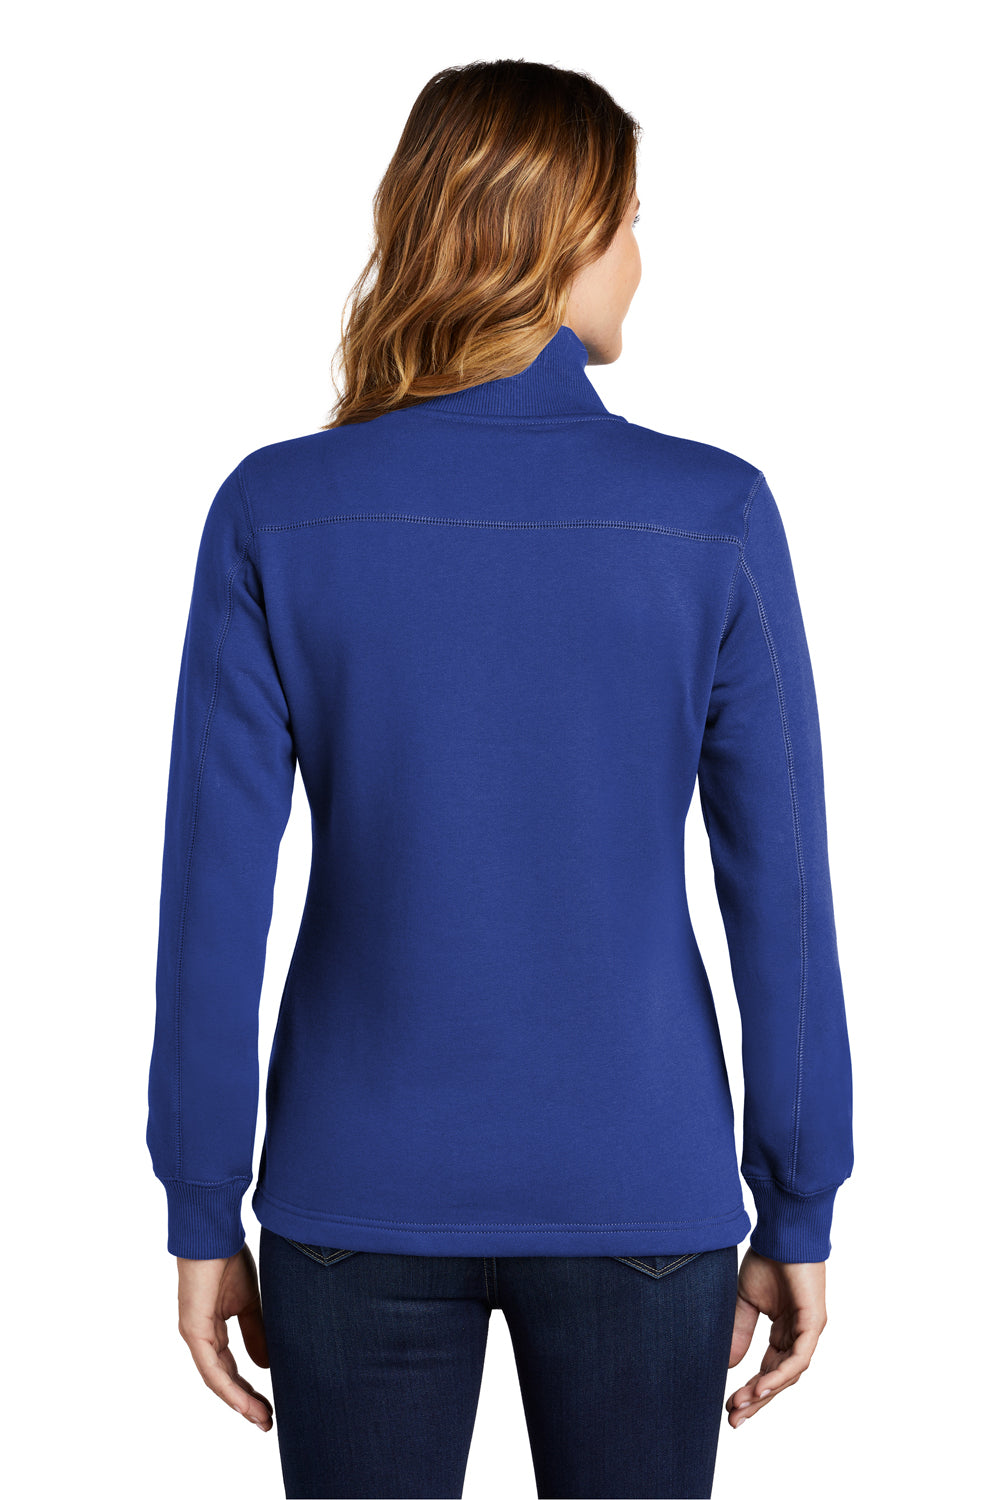 Sport-Tek LST253 Womens Fleece 1/4 Zip Sweatshirt Royal Blue Back